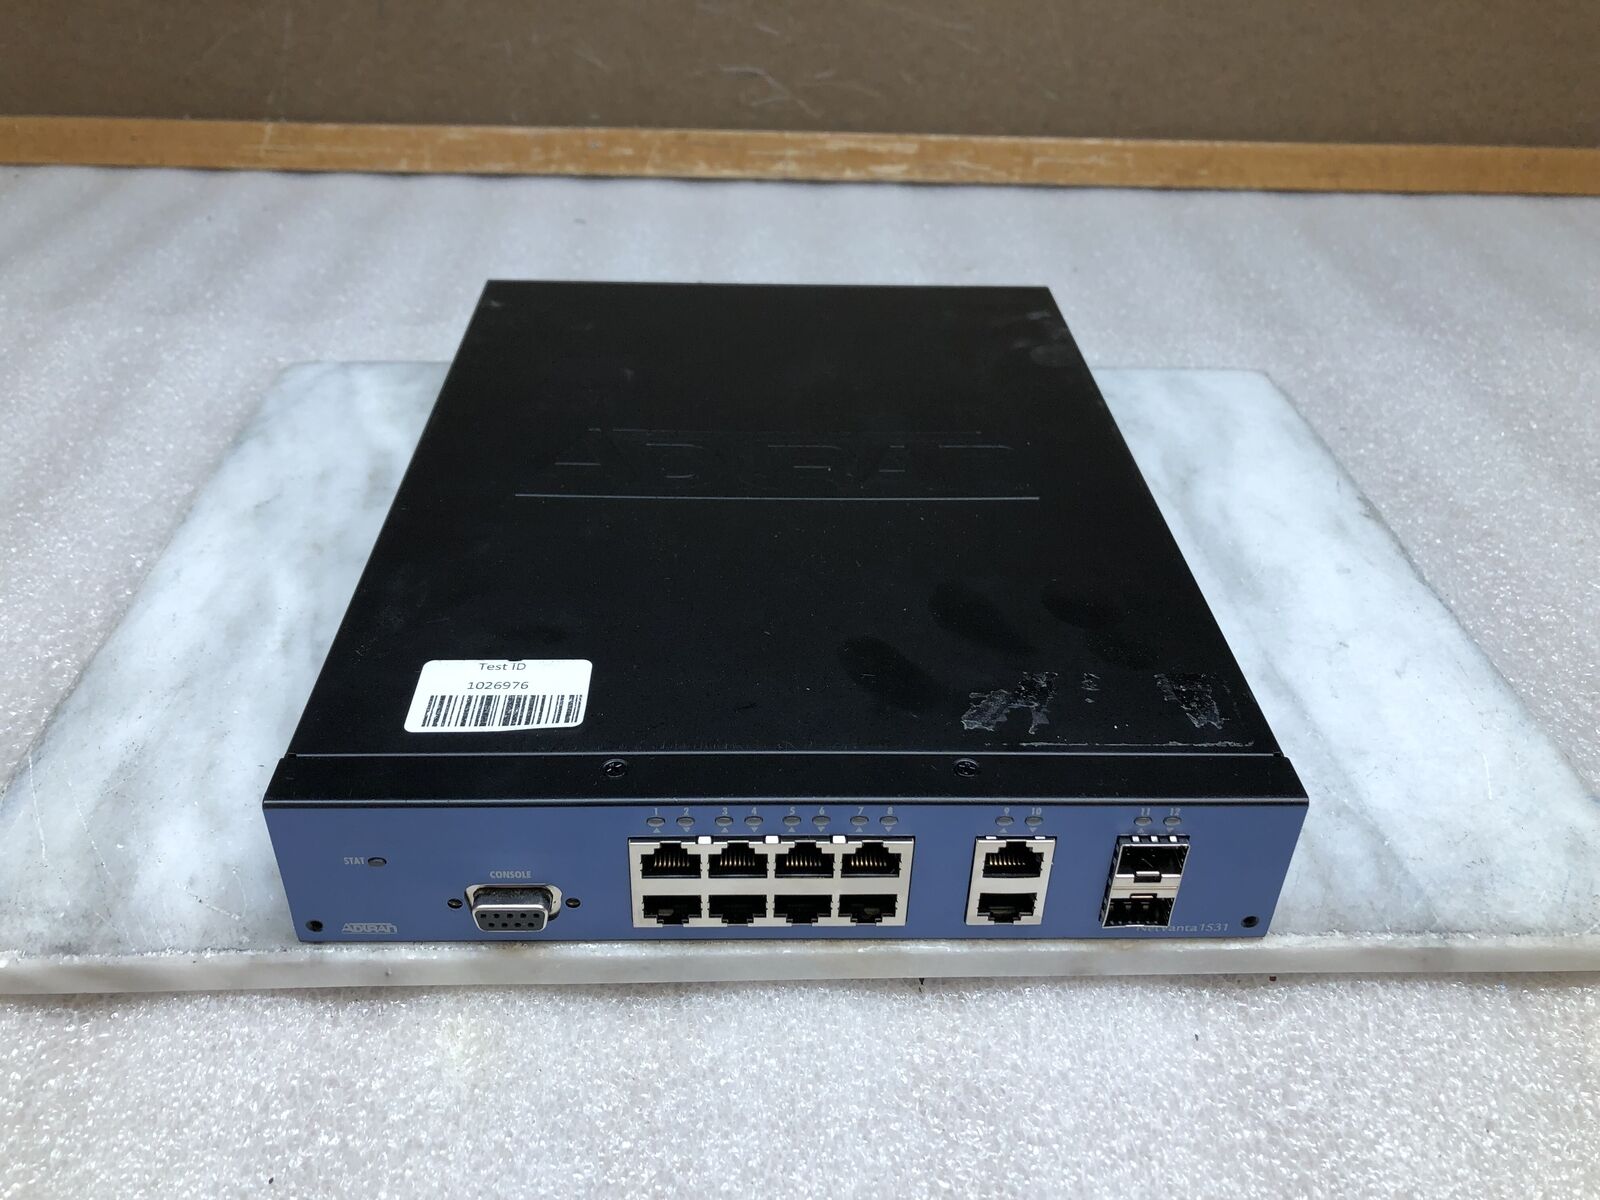 Adtran NetVanta 1531 Router P/N:1700570F1 12-Port Gigabyte Ethernet Switch